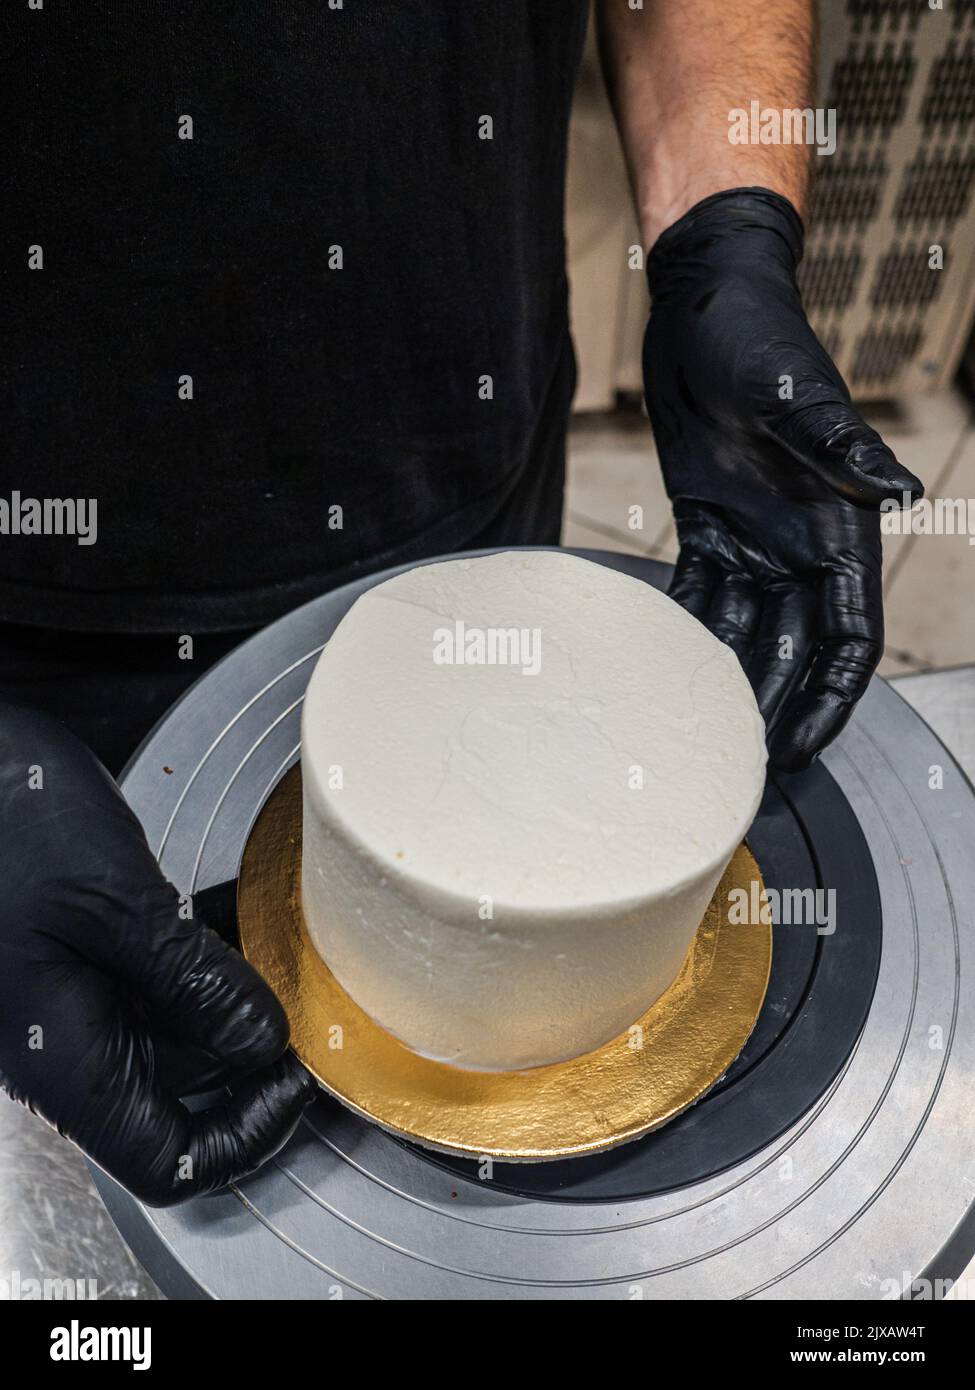 Decorador con espátula y rascador para suavizar el cremoso de mantequilla en un pastel esmerilado Foto de stock